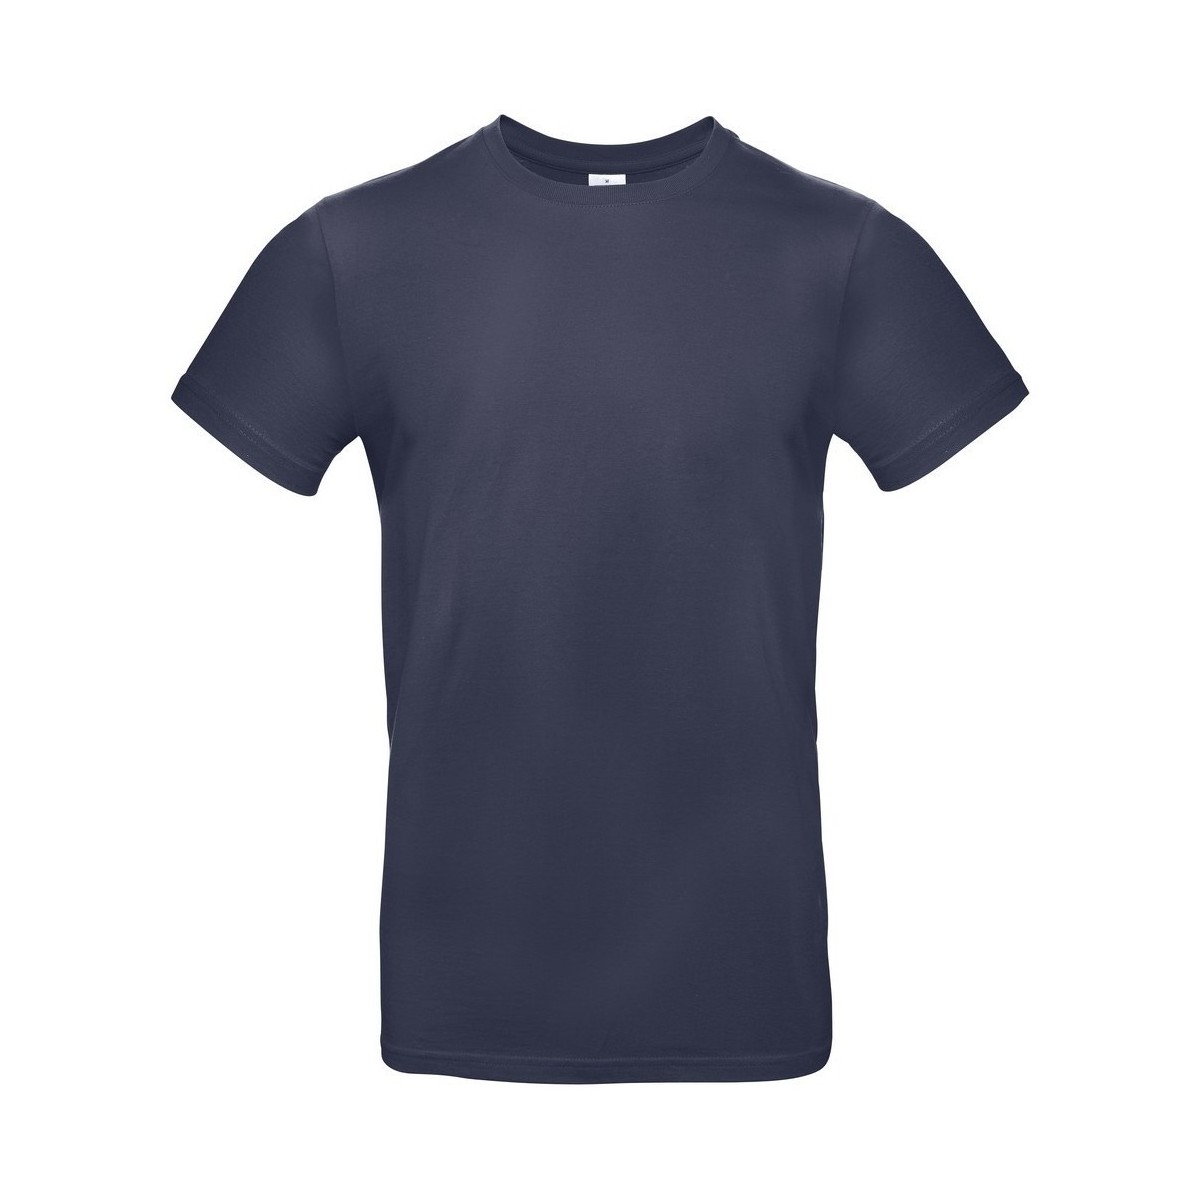 textil Hombre Camisetas manga larga B And C BA220 Azul